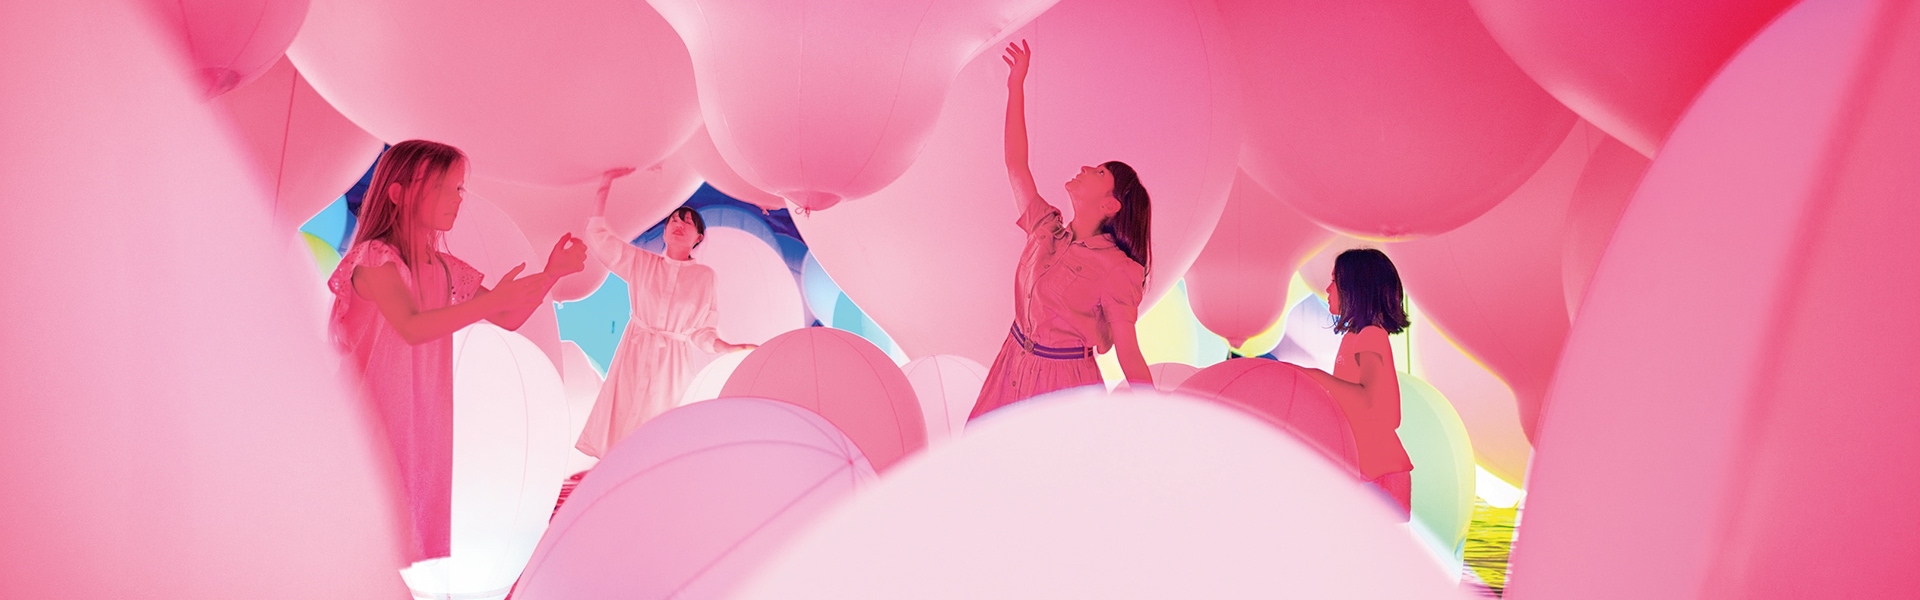 Štiri ženske med igranjem z roza velikimi baloni.